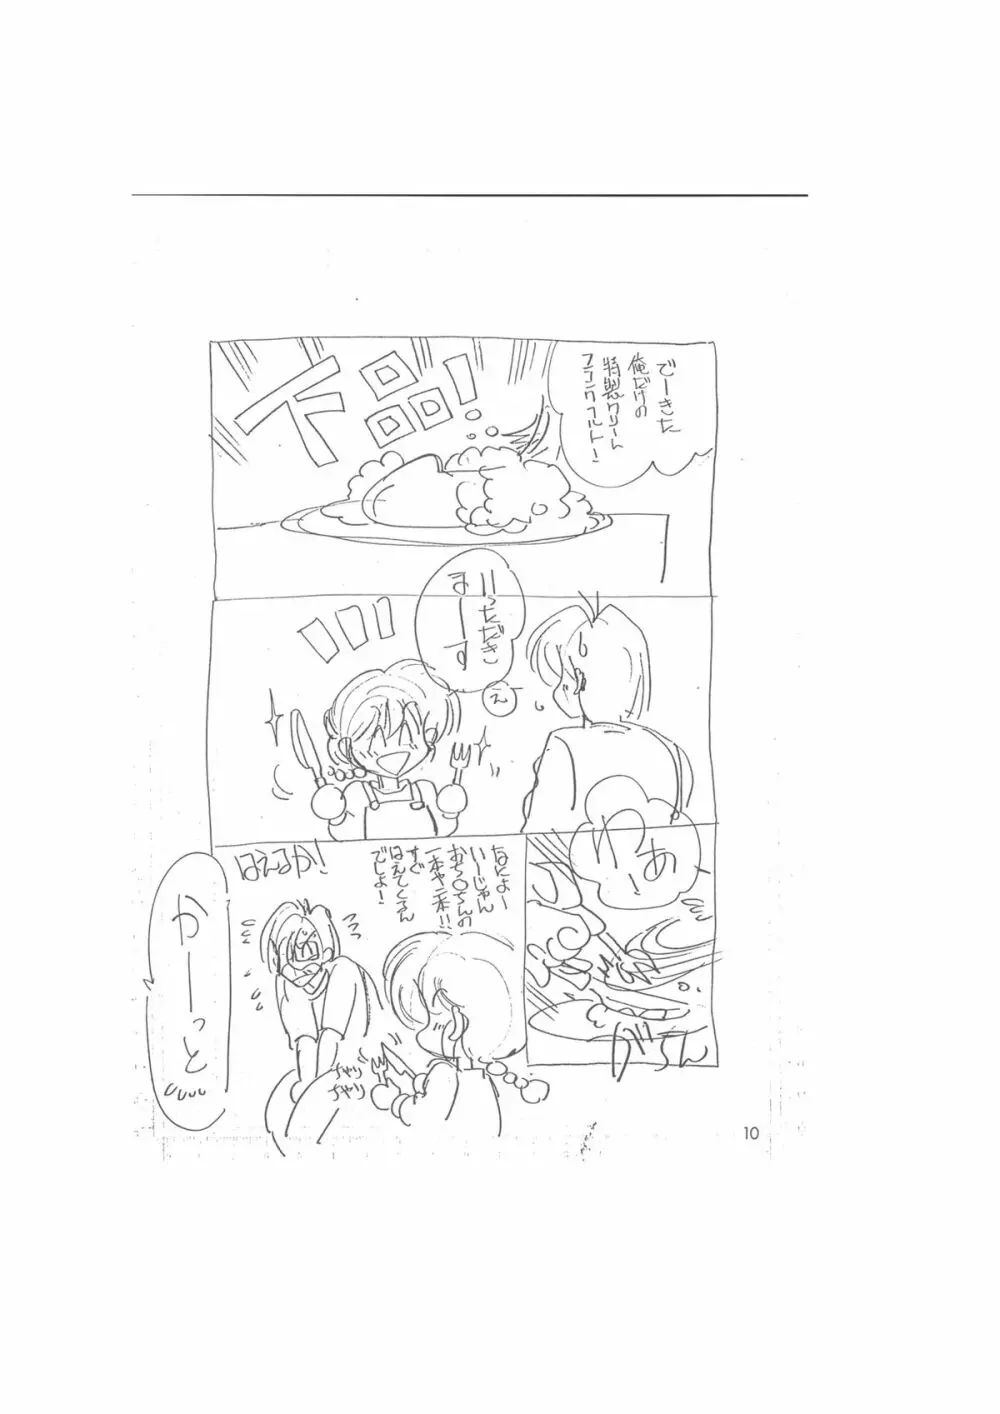 メイキング・オブ・『真・最悪的悲劇』 – A Ranma Doujin Sketch by Dark Zone 10ページ